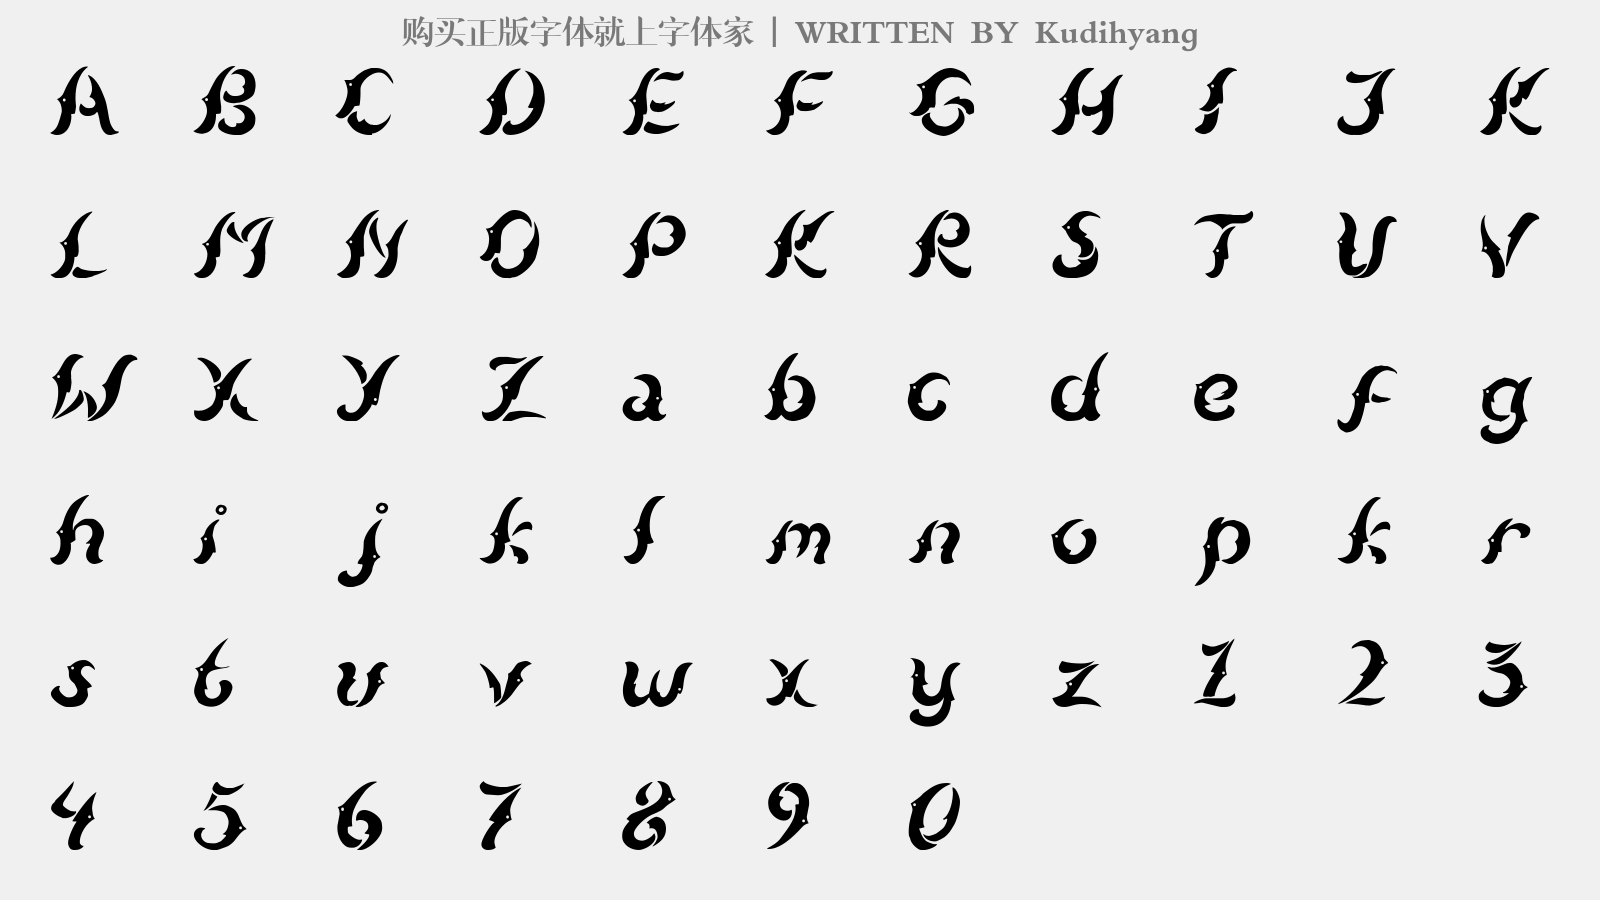 Kudihyang - 大写字母/小写字母/数字